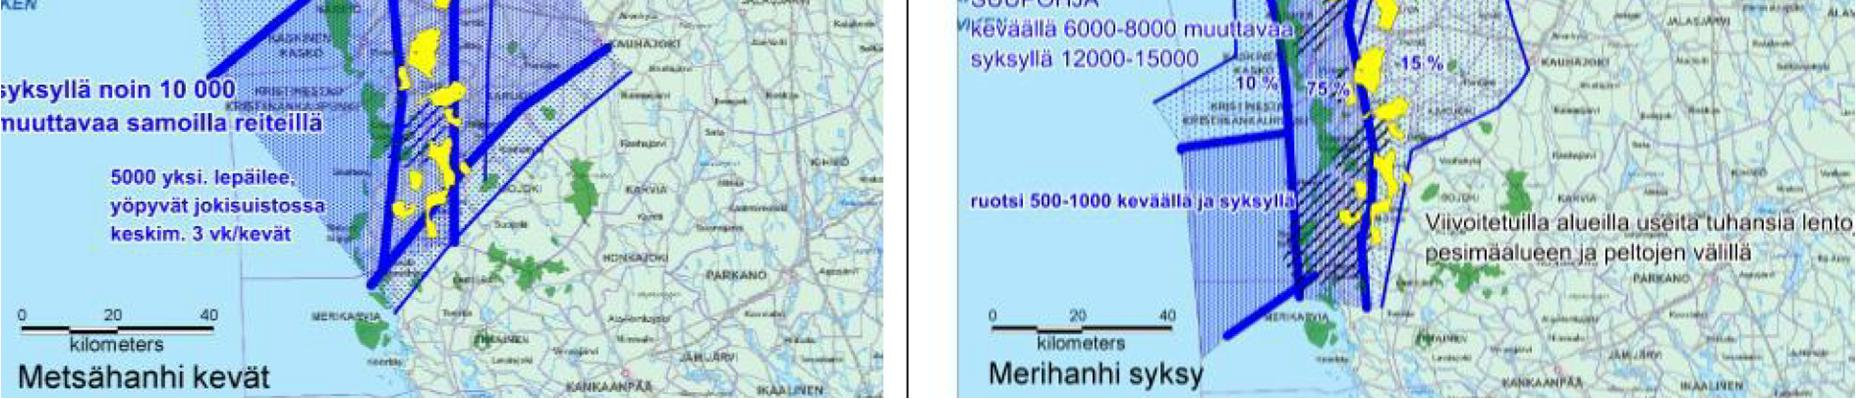 115 Kuva 84. Metsähanhen ja merihanhen päämuuttoreitti Pohjanlahden rannikolla, Uttermossan hankealueen sijainti osoitettu punaisella pisteellä.